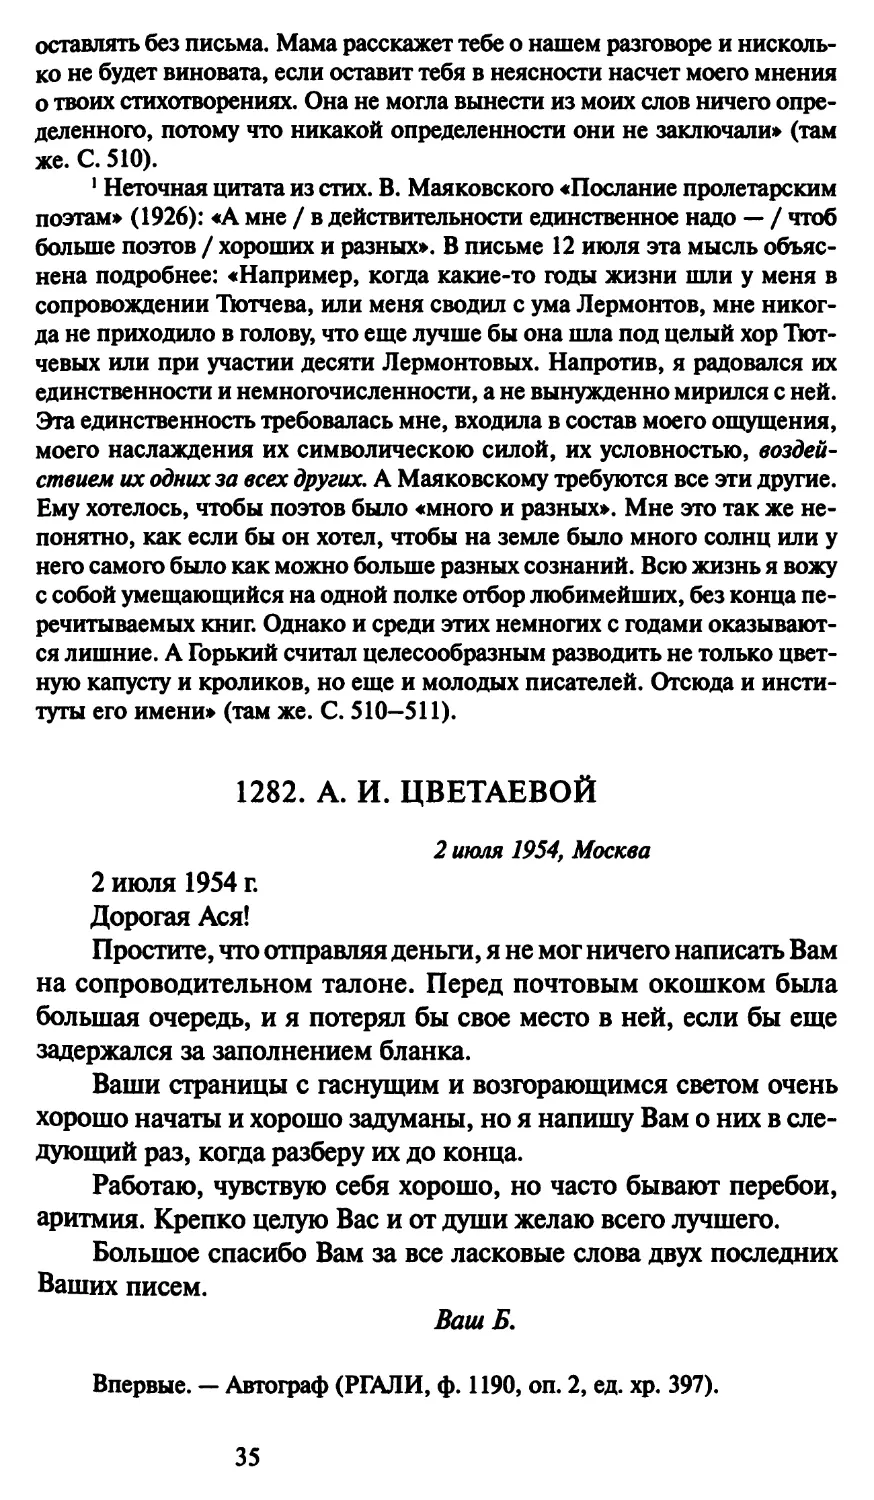 1282. А. И. Цветаевой 2 июля 1954